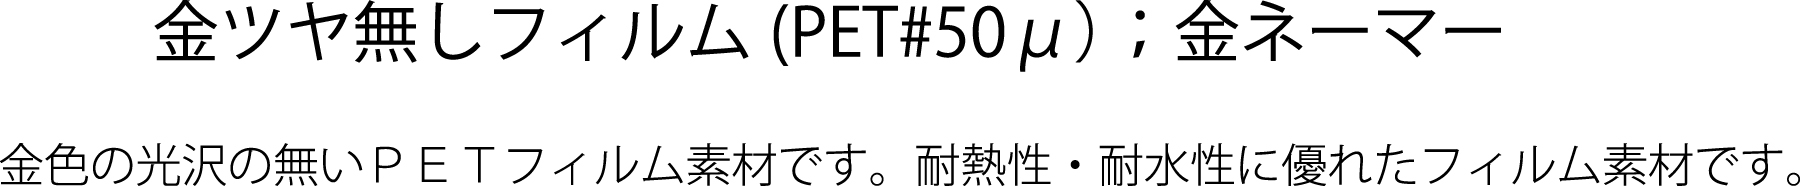 金ツヤ無し(PET#50?)